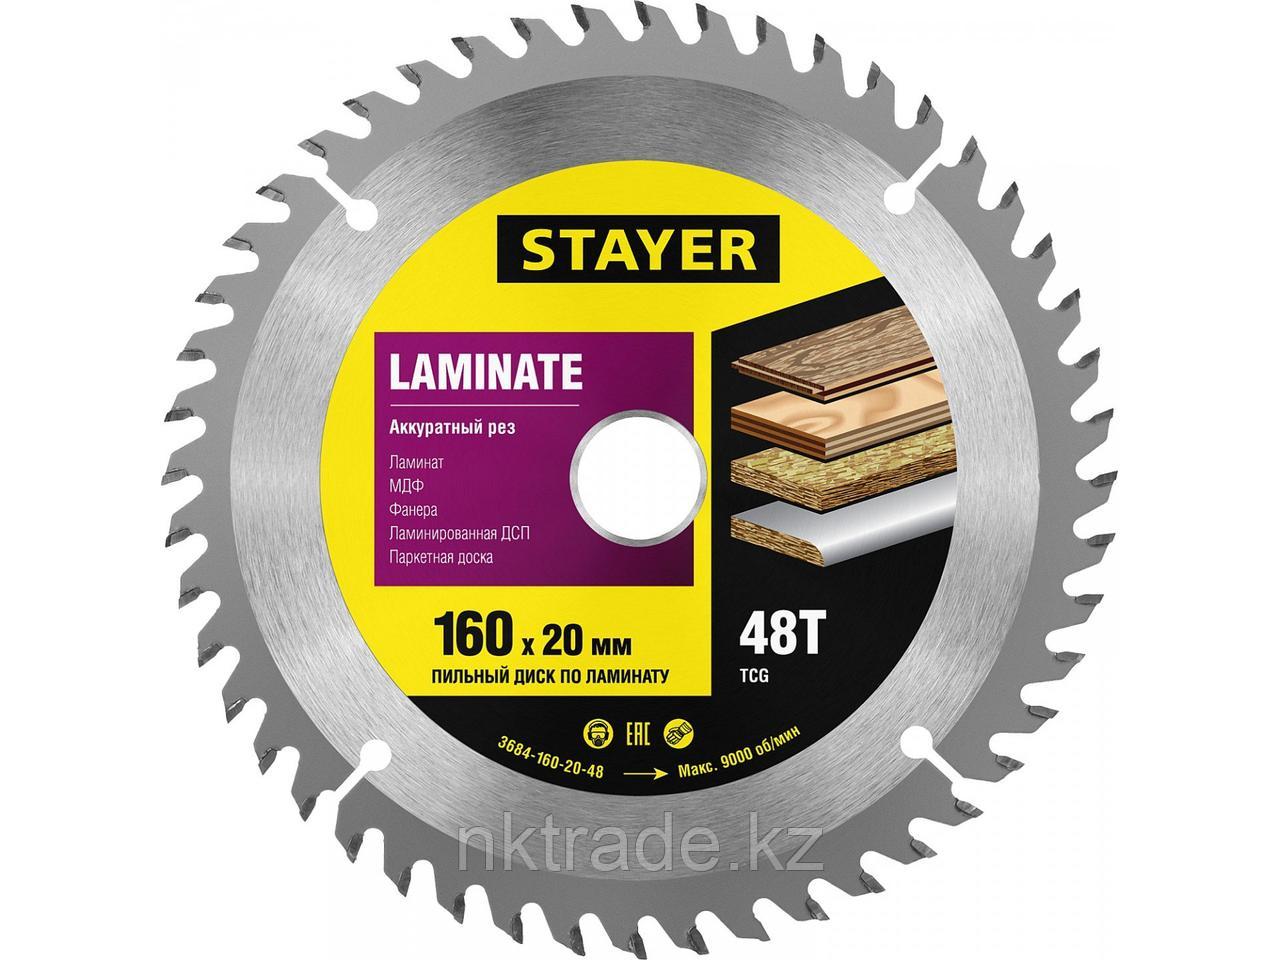 Пильный диск "Laminate line" для ламината, 160x20, 48T, STAYER3684-160-20-48